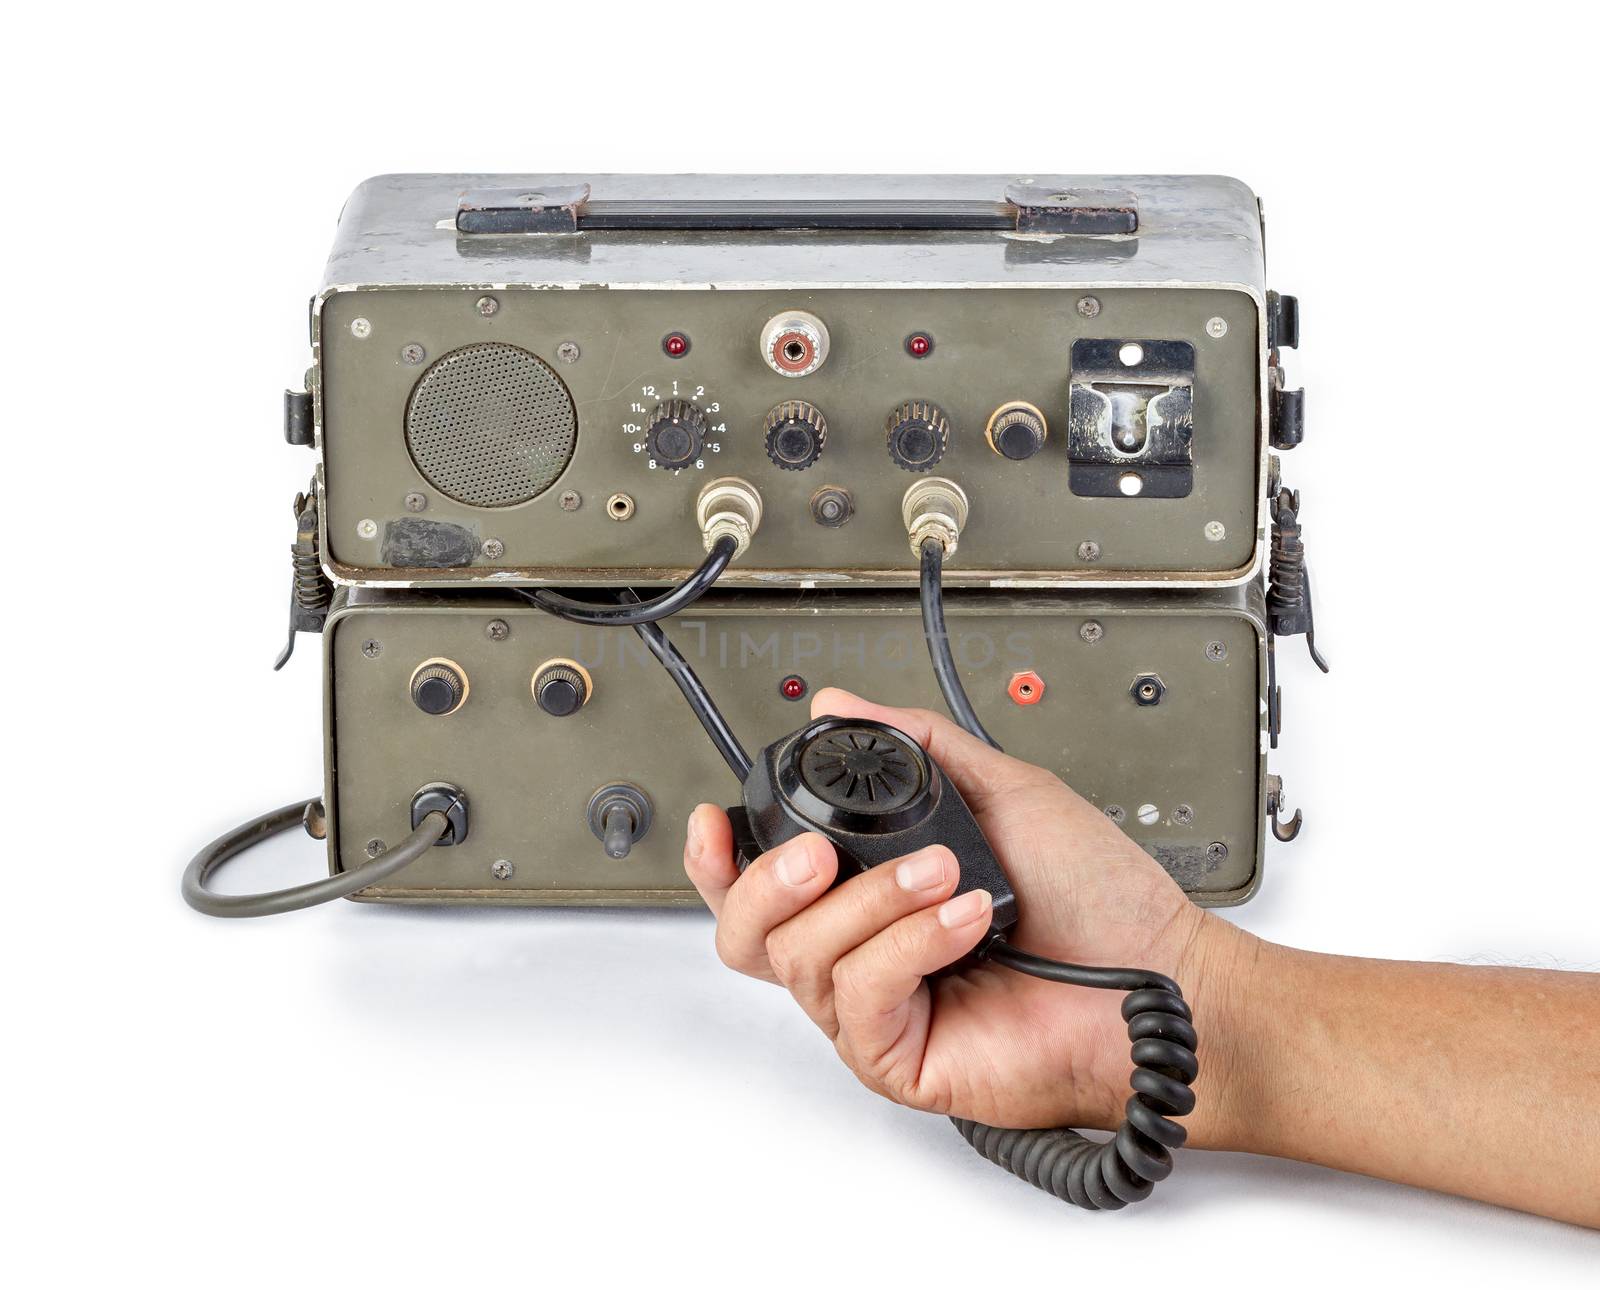 old dark green amateur ham radio holding in hand on white background